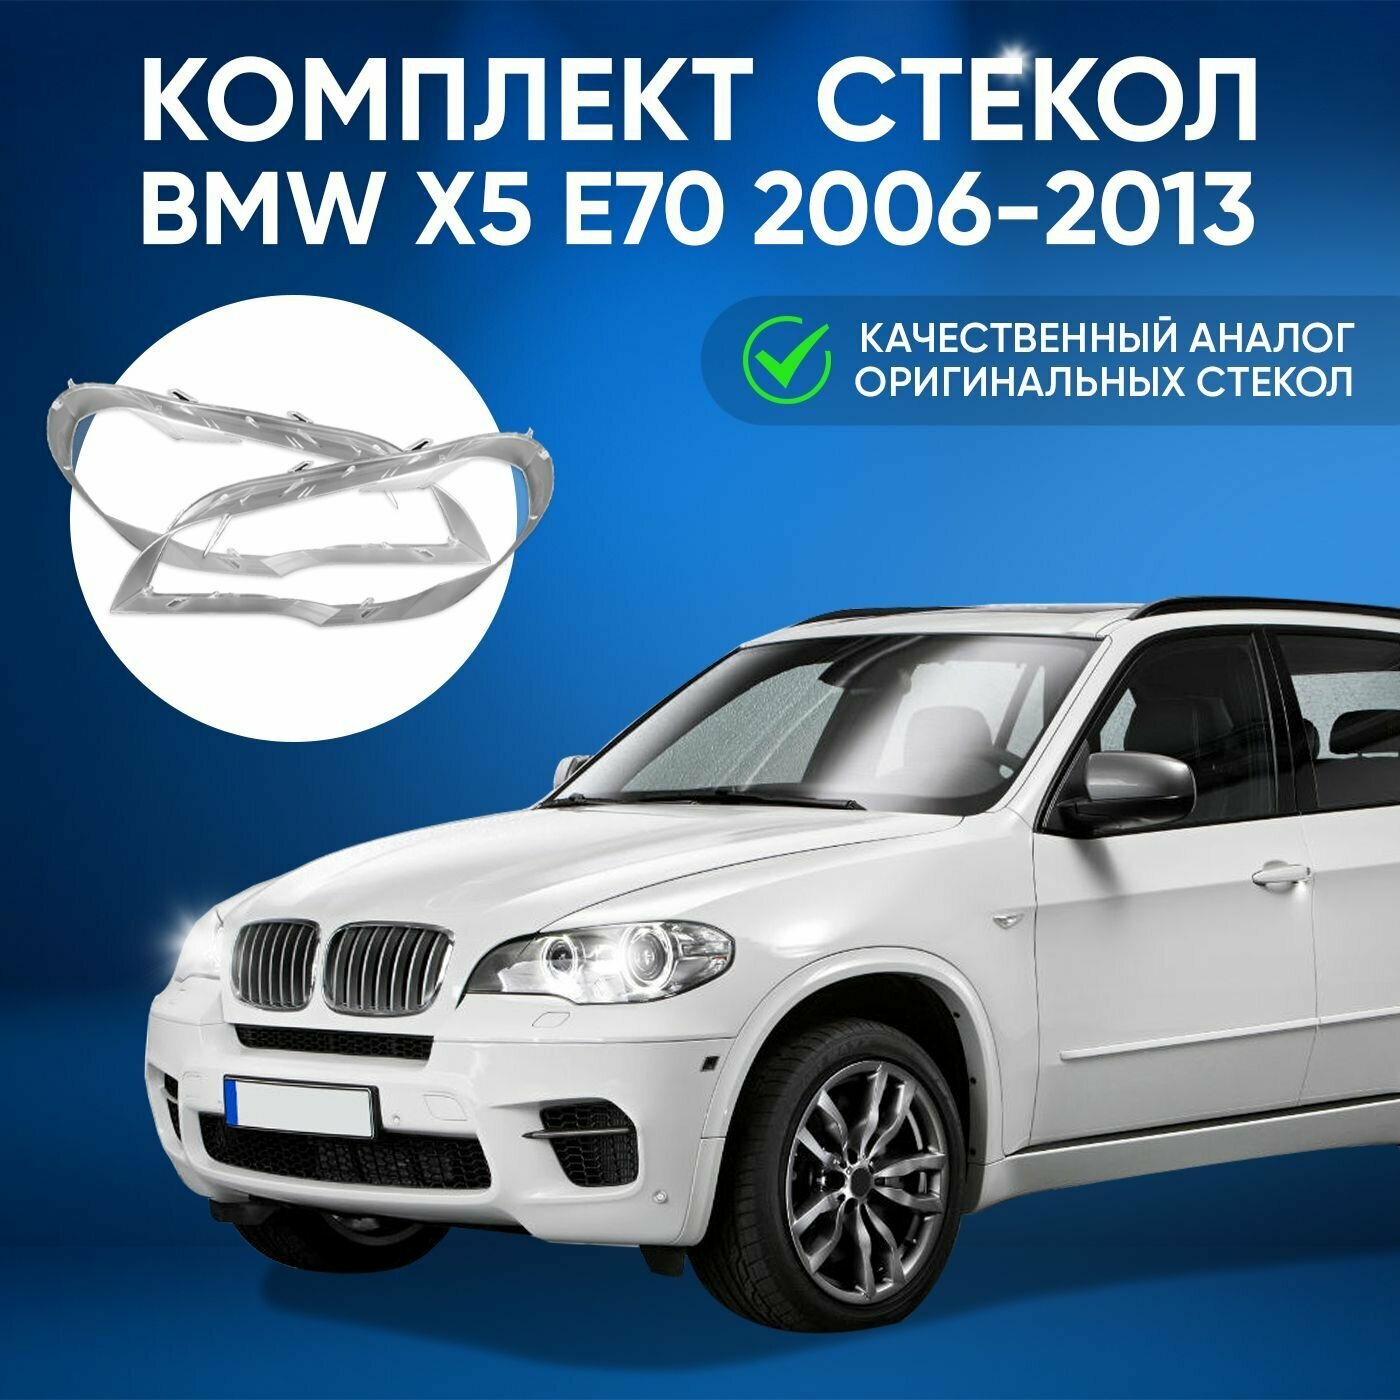 Стекло фары GNX для автомобилей BMW X5 E70 2006-2013 левое поликарбонат переднее для БМВ Х5 из прозрачного материала